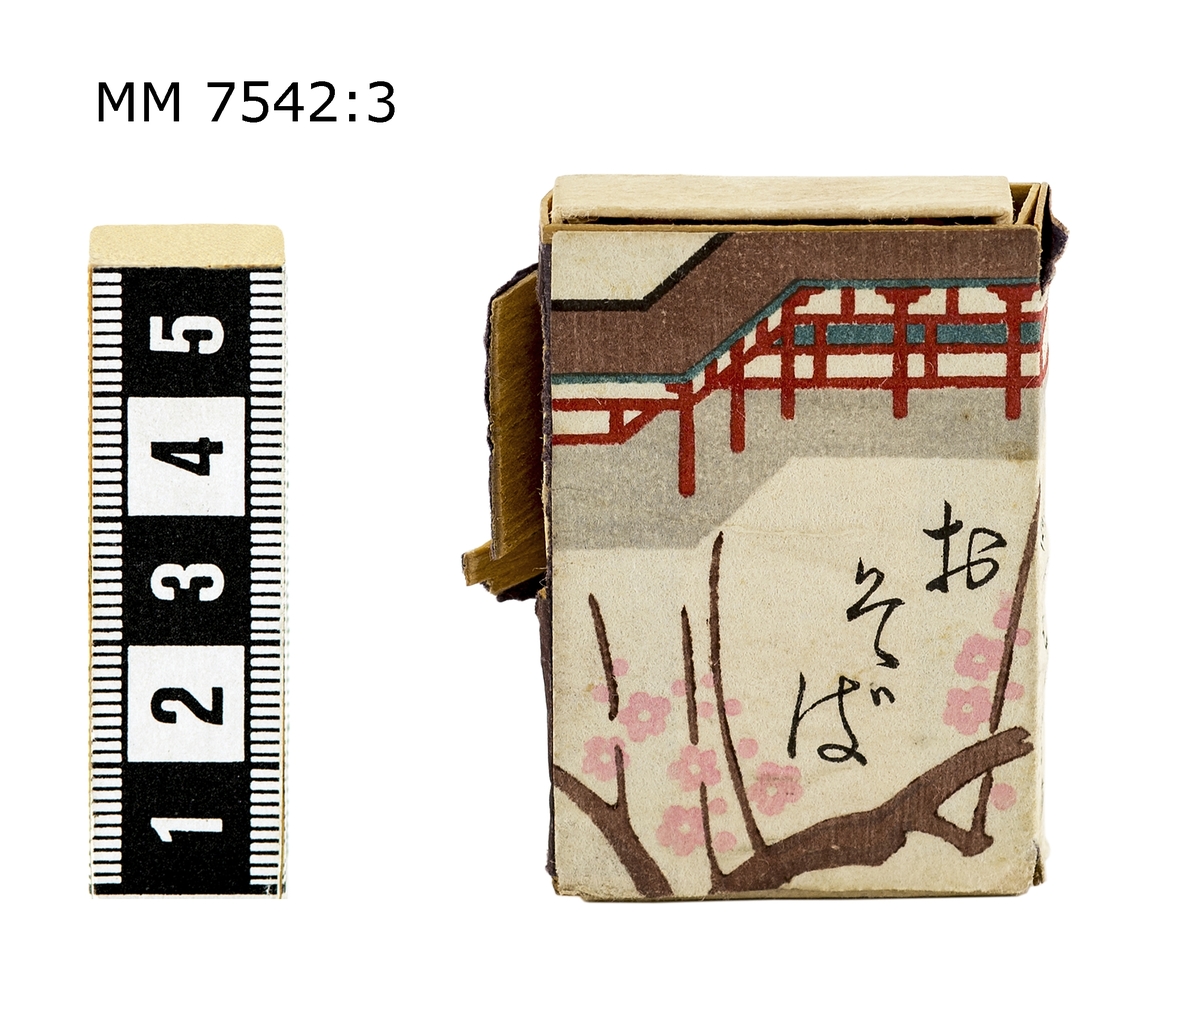 Tändsticksask från Tokyo. På asken står, enligt uppgift från meddelare på DigitaltMuseum, det "O-So-Ba" (Japanska sobanudlar) på förpackningen, detta tyder på att asken kommer från en japansk nudelaffär